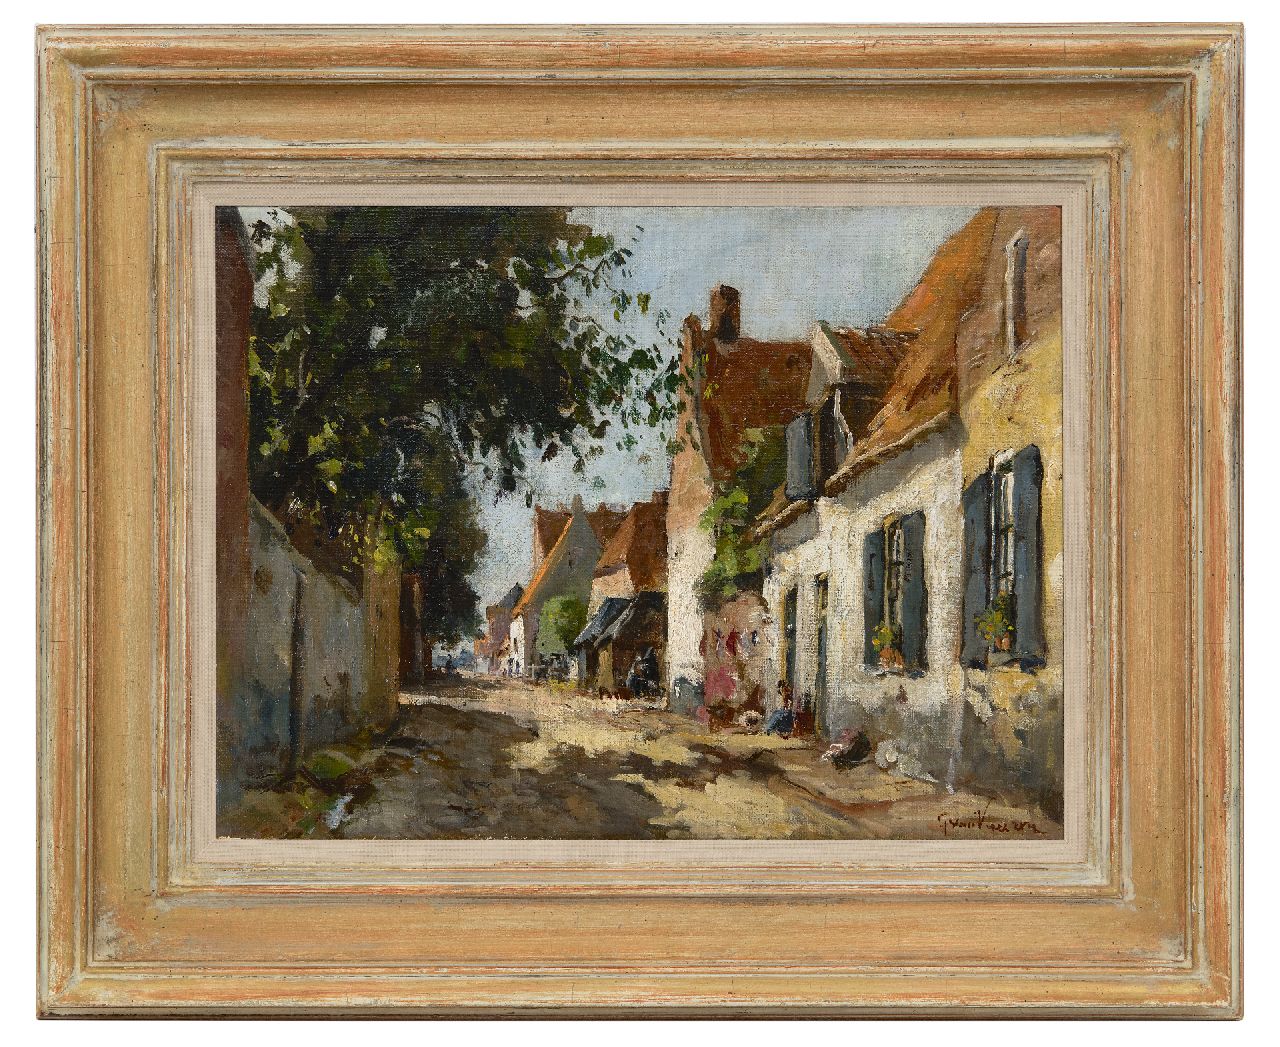 Vuuren J. van | Jan van Vuuren | Schilderijen te koop aangeboden | Zonnig straatje in Elburg, olieverf op doek 30,0 x 39,8 cm, gesigneerd rechtsonder